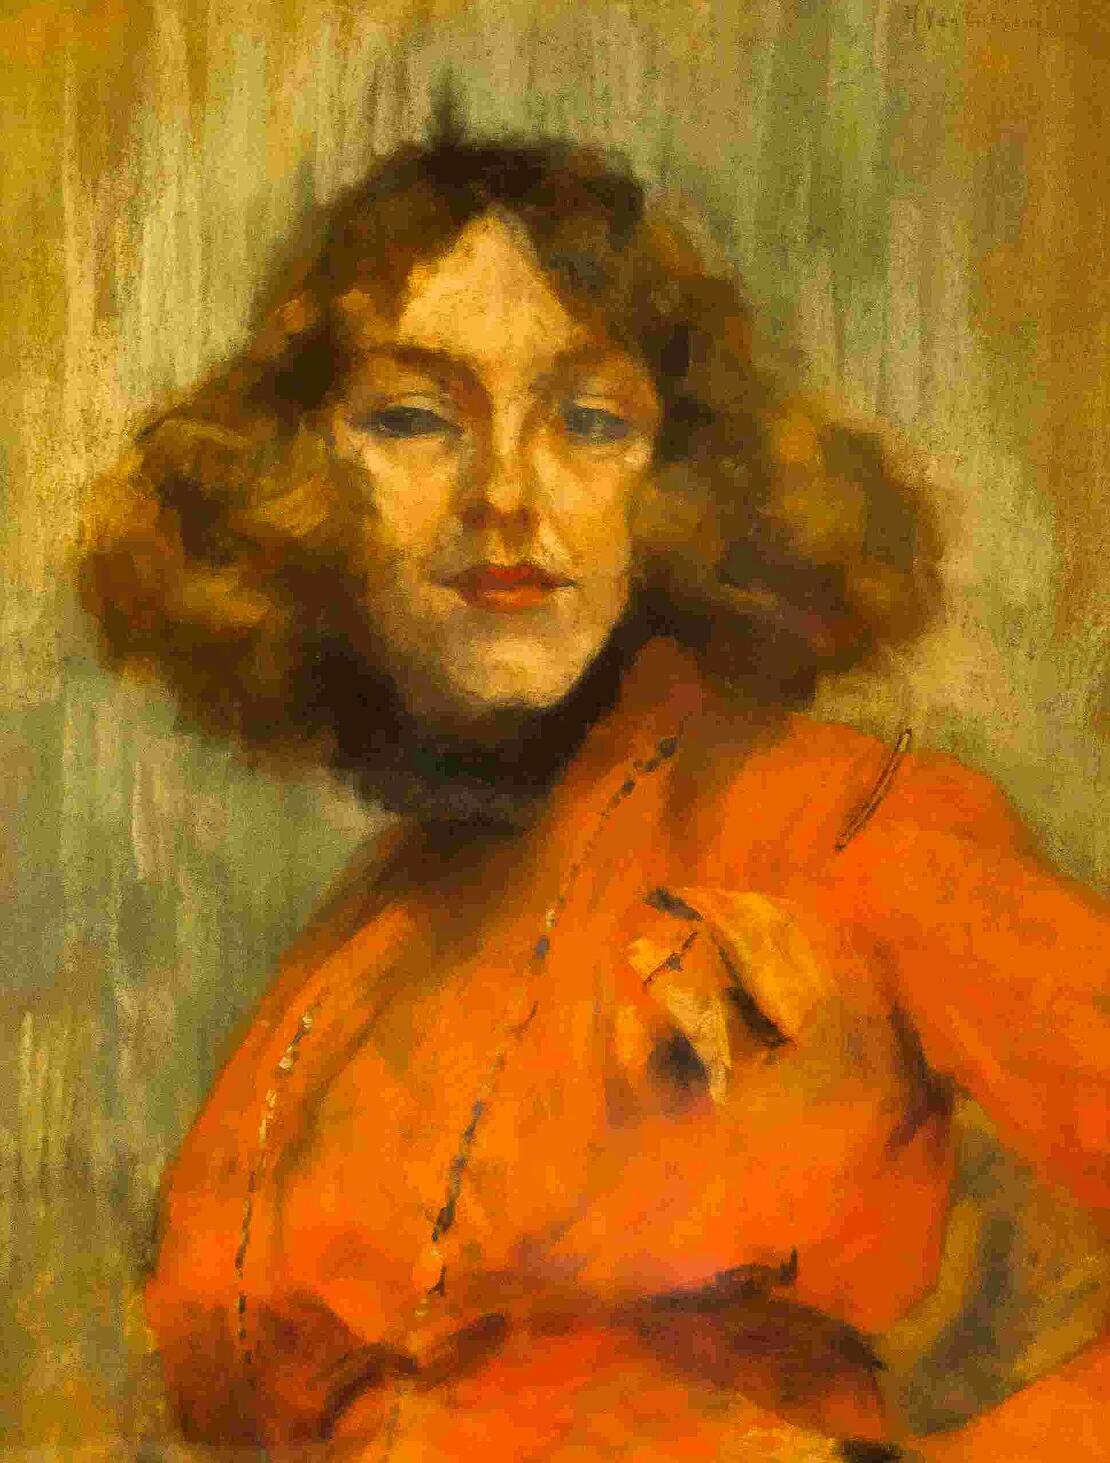 Pastellbild einer Frau. Sie ist bis zur Taille zu sehen, rote Haare und rotgeschmunkte Lippen, rotes Oberteil, gelblicher Hintergrund